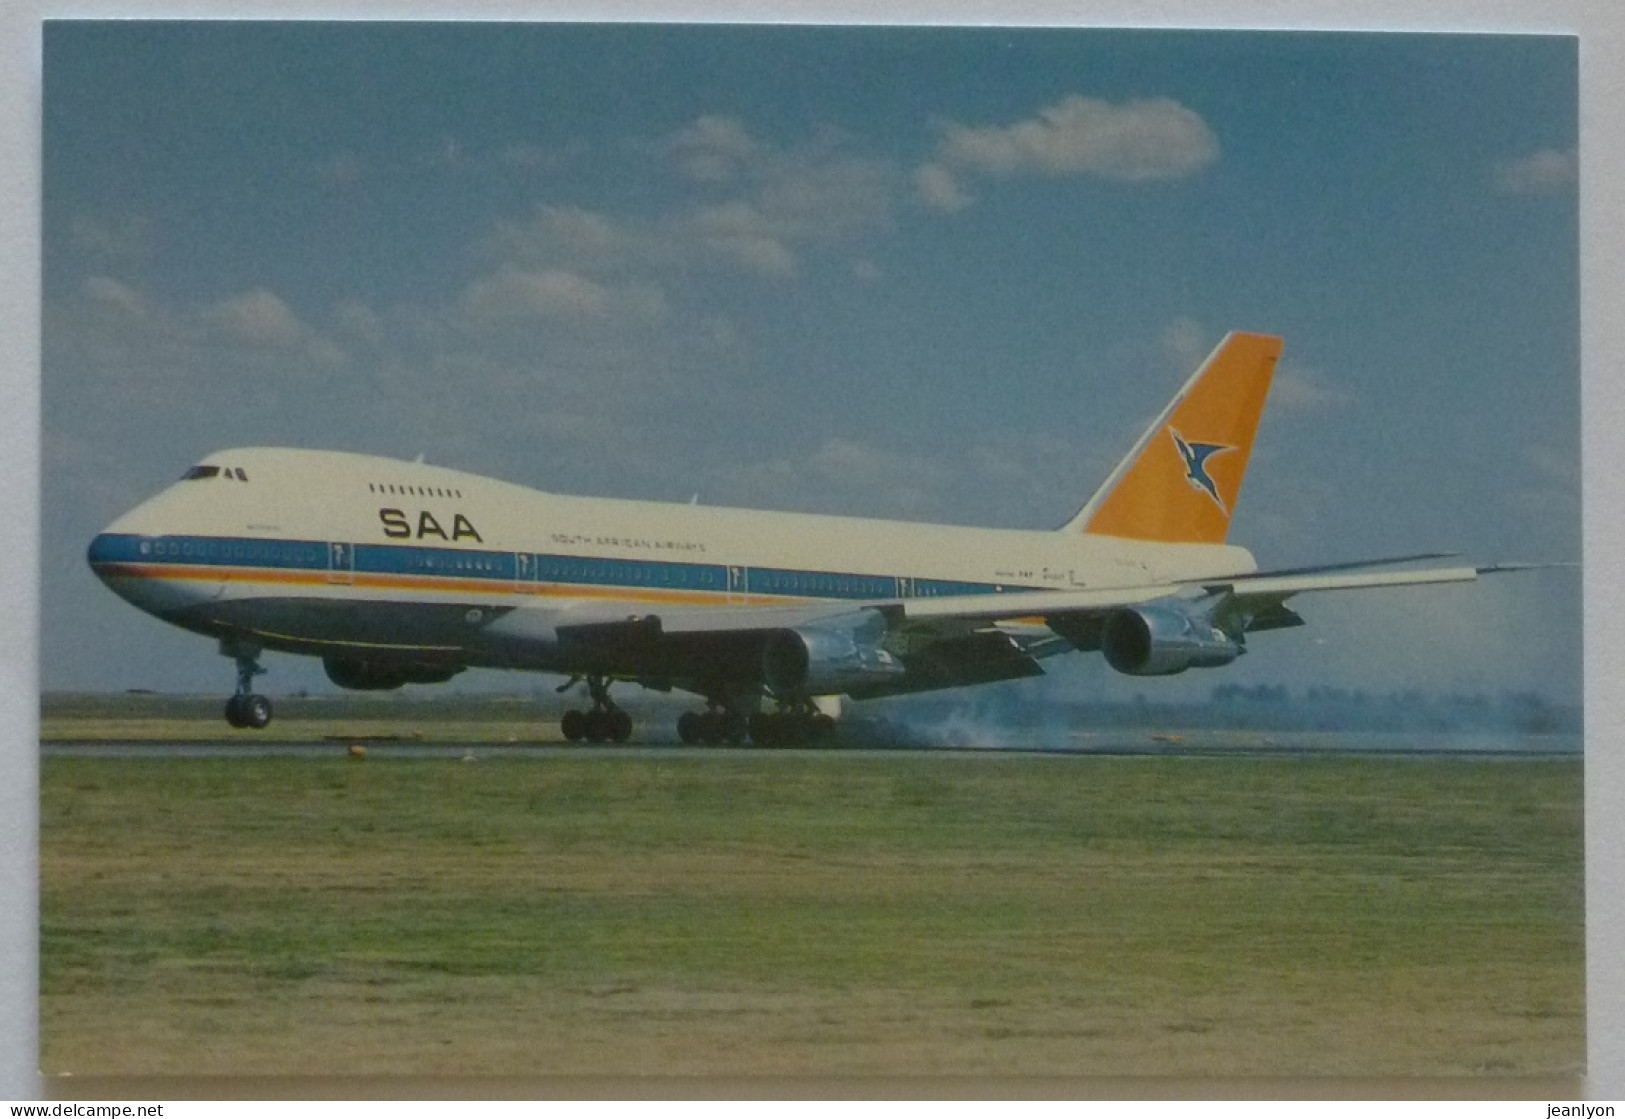 AVION BOEING 747 B 200 / Super B - SAA SAL / South African Airways - Sud Afrikaanse Lugdiens - Avion Au Sol Sur La Piste - 1946-....: Moderne